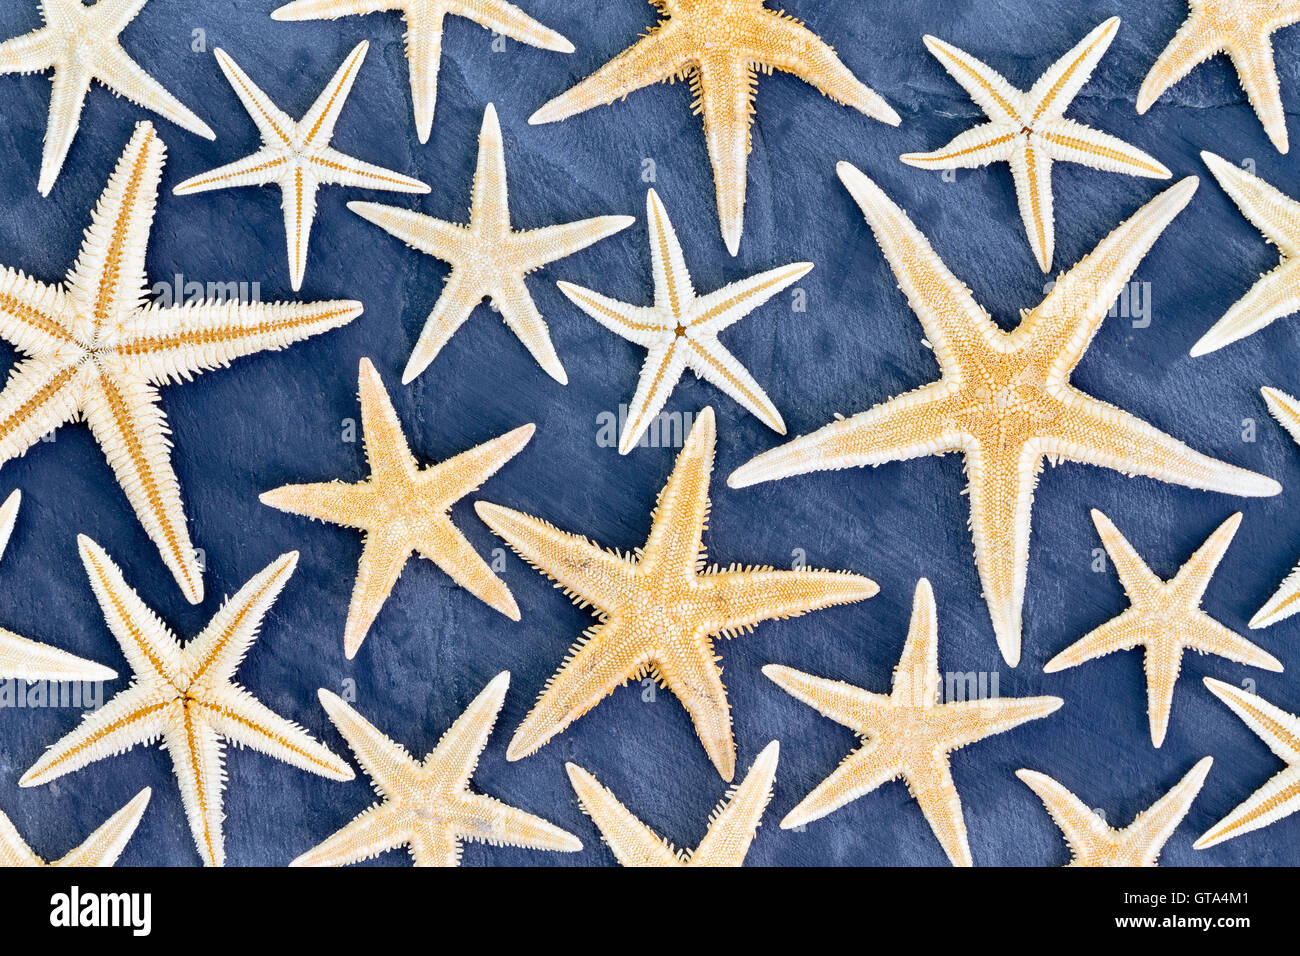 Vista superior de la trama de fondo de fotograma completo de secado starfish en diversos tamaños sobre fondo azul para ir a la playa o al océano vida t Foto de stock